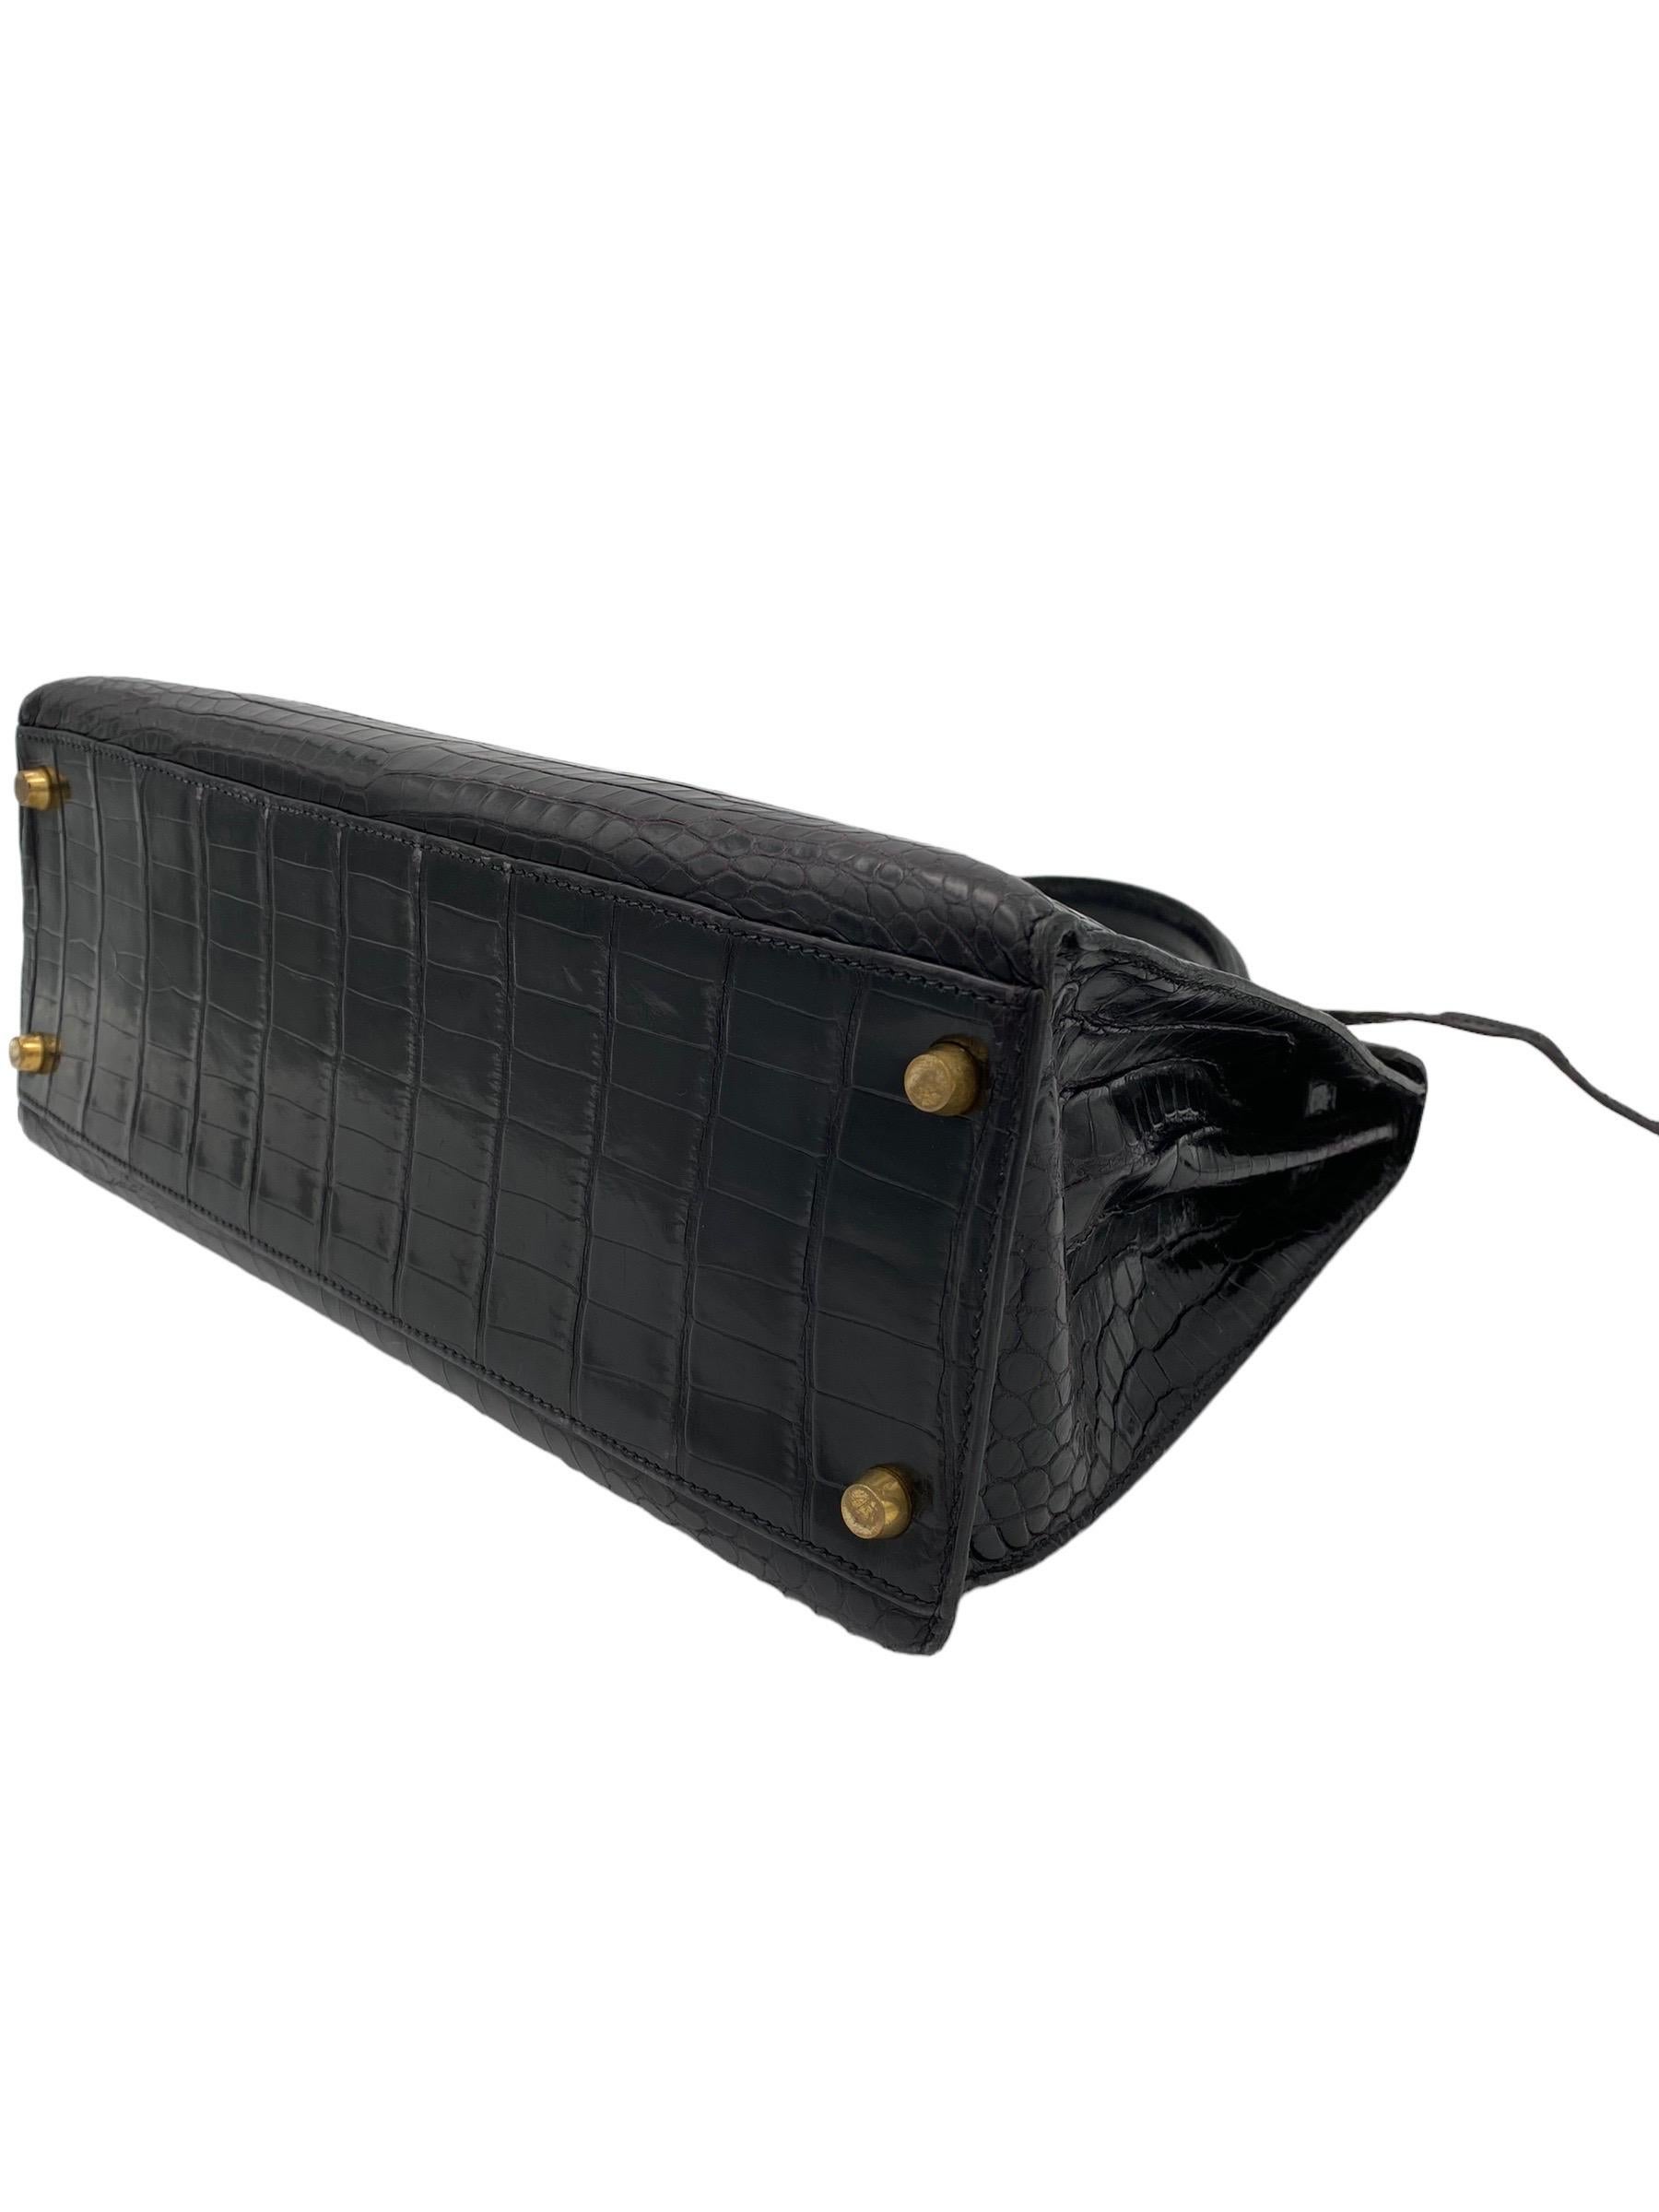 1998 Hermès Kelly 32 Black Leather Top Handle Bag 3